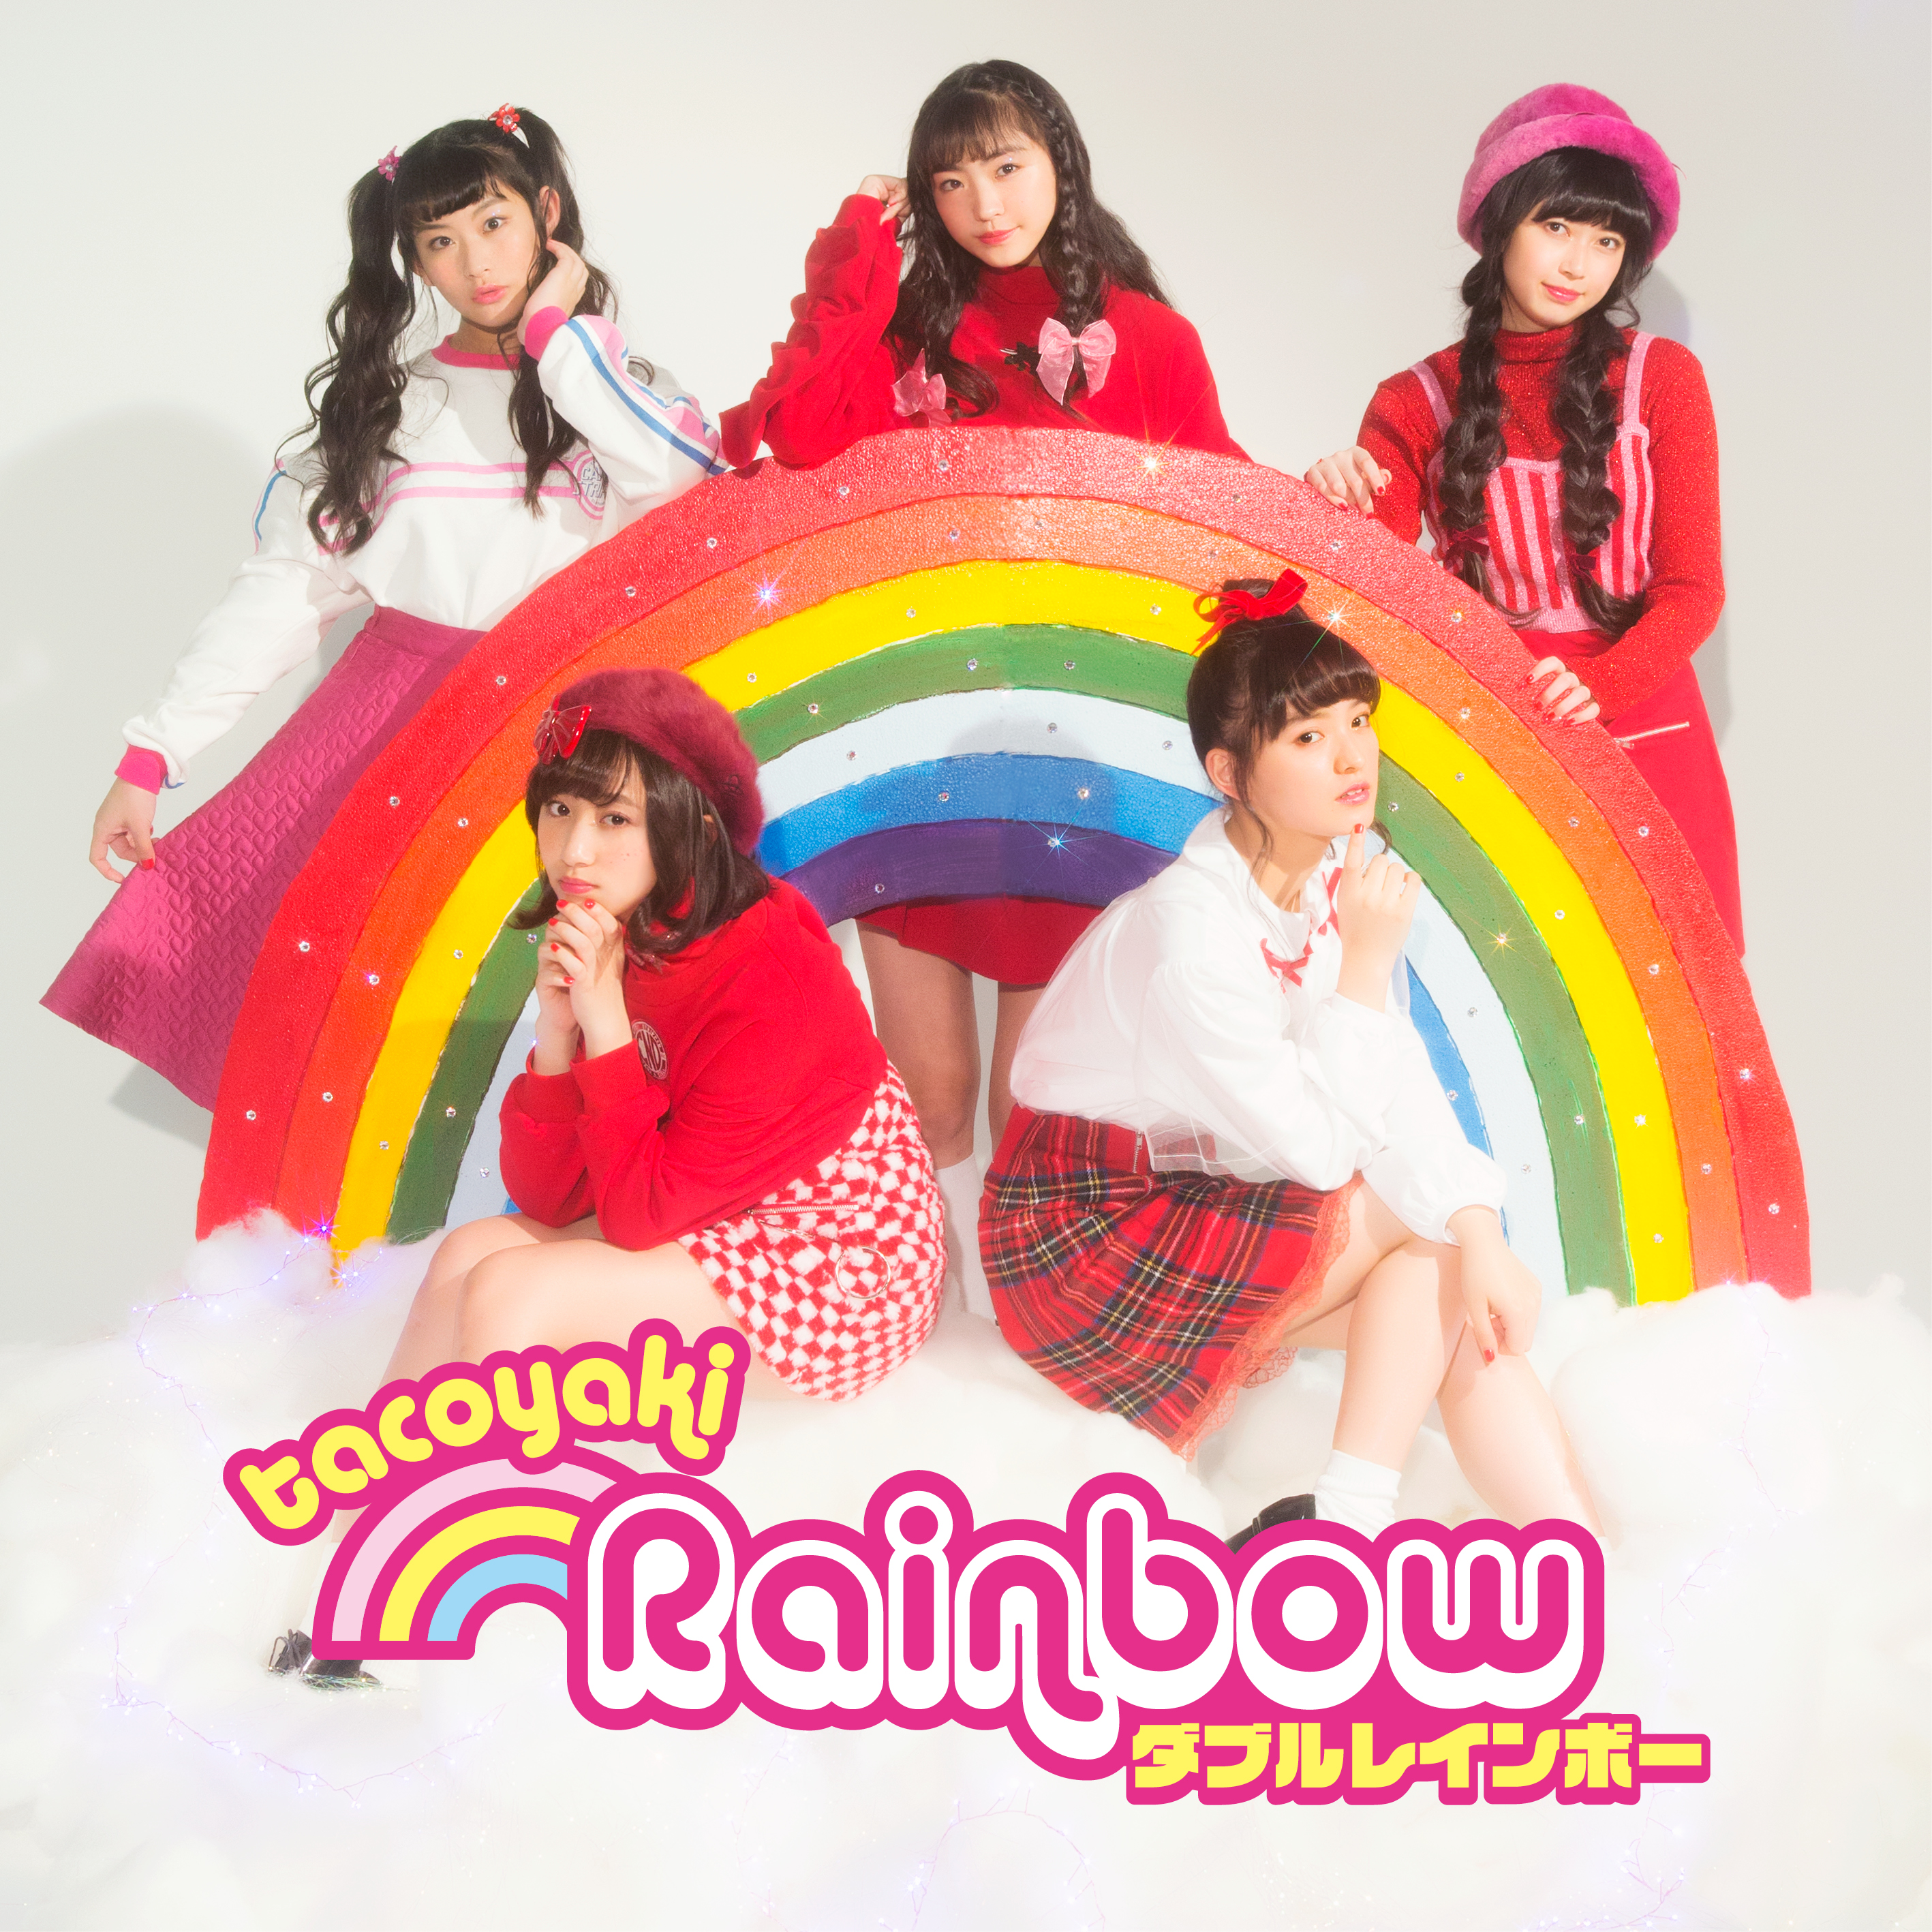 20180614.1147.10 Tacoyaki Rainbow - Double Rainbow (FLAC) cover 2.jpg